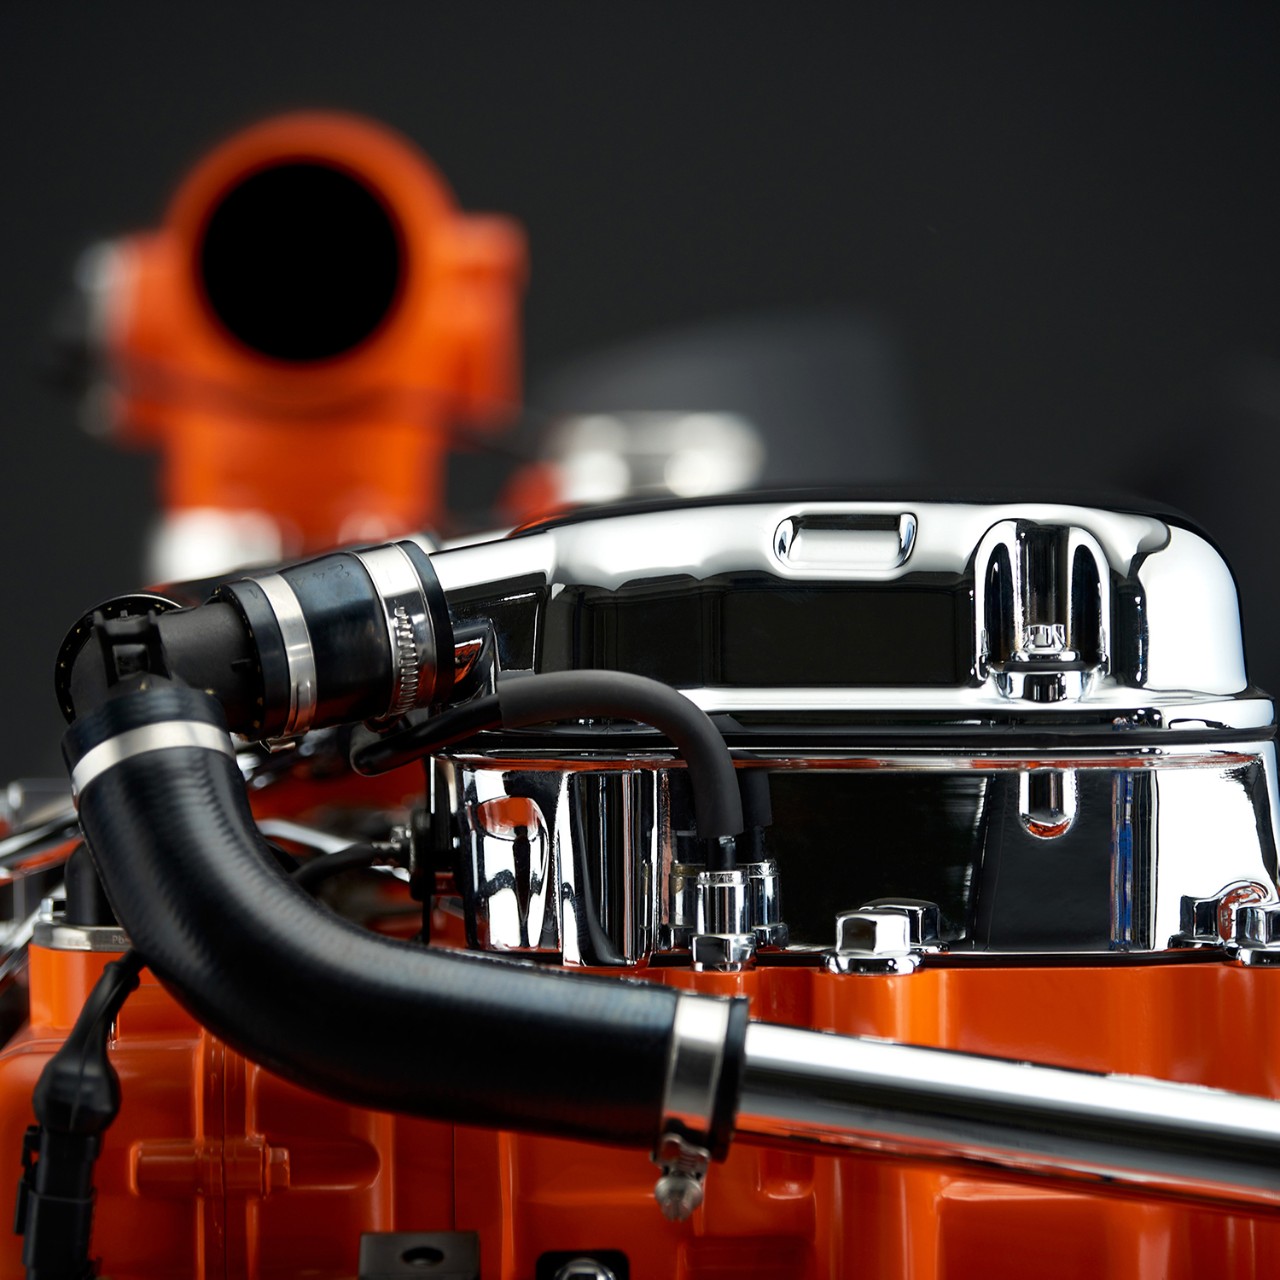  Motor de generación de energía industrial de Scania de 9 litros